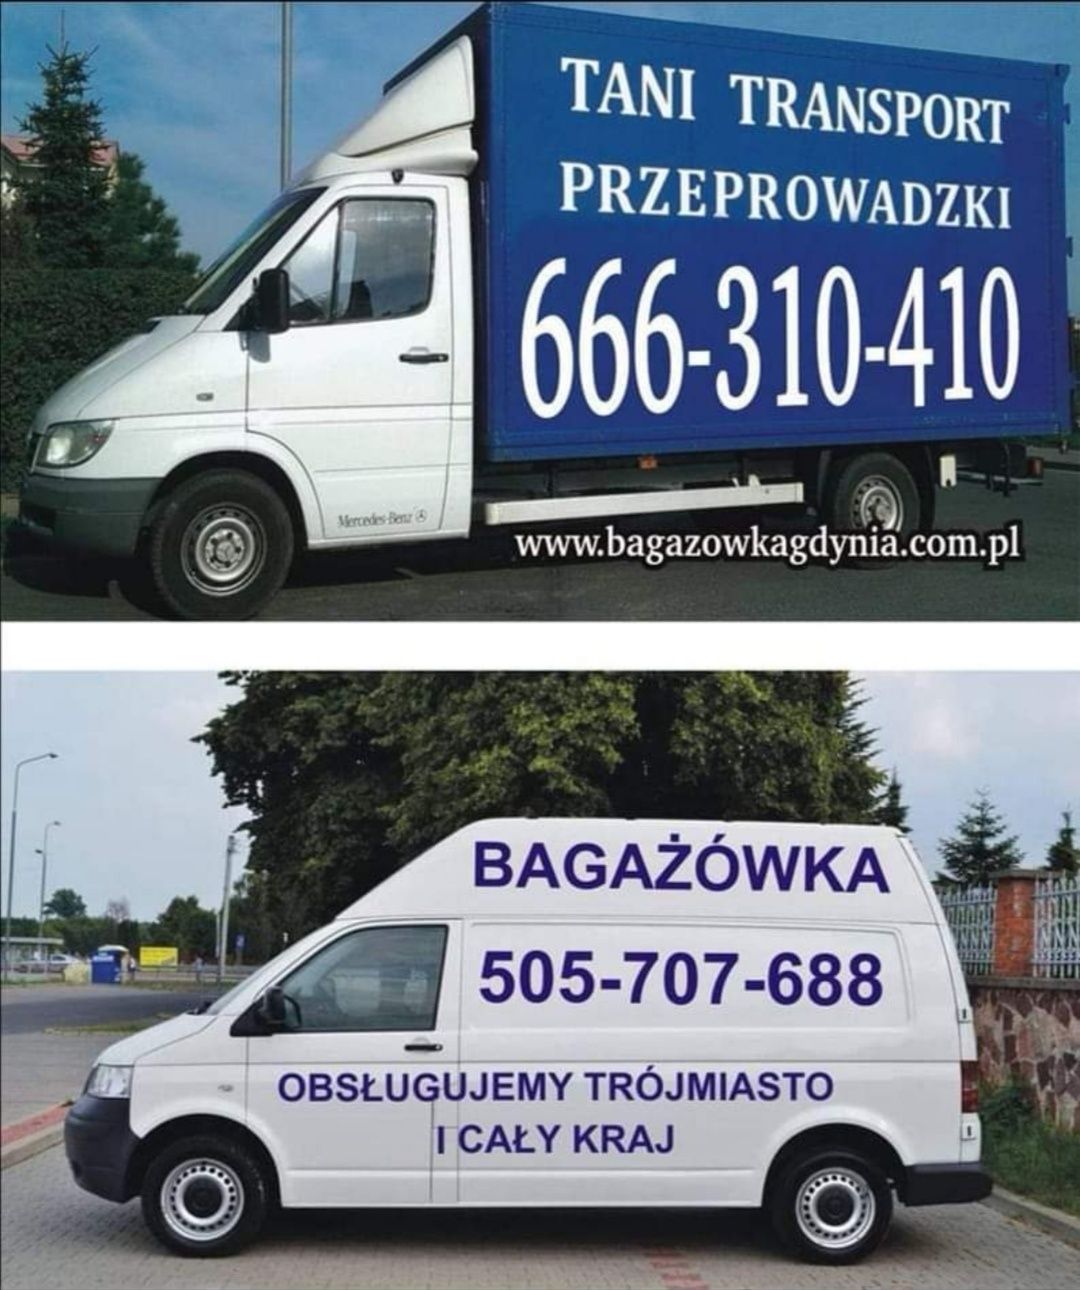 BAGAŻÓWKA Przeprowadzki Przewóz Rzeczy AGD RTV Transport Taxi